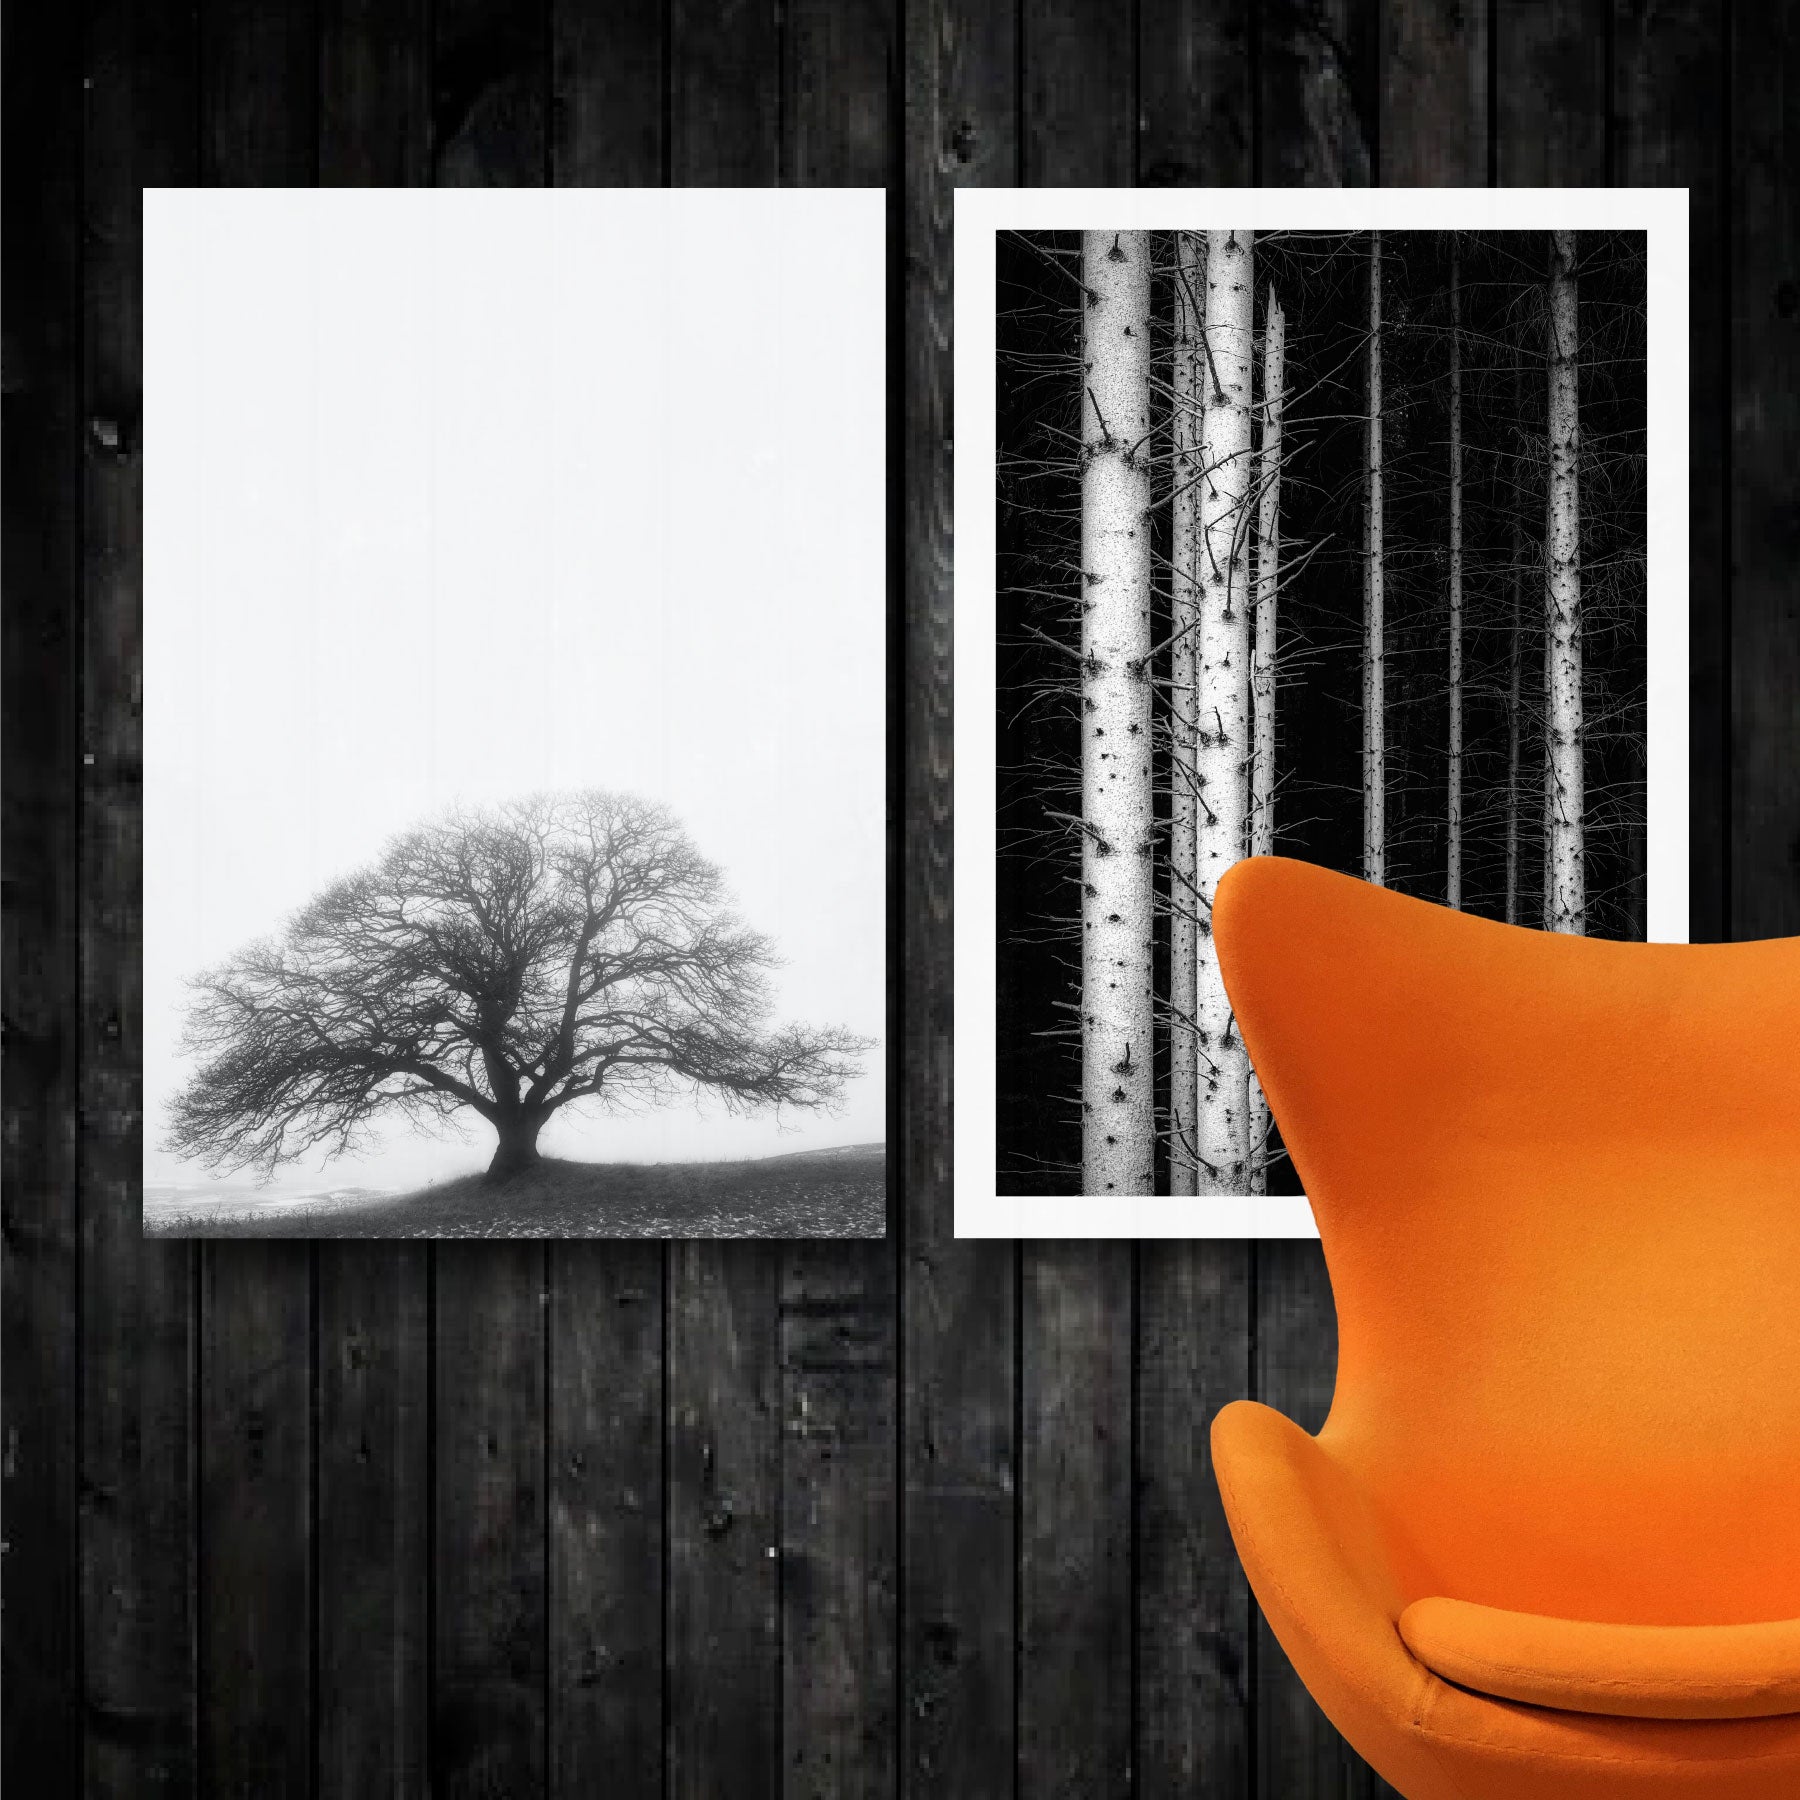 to naturplakater med træmotiver i sort-hvid